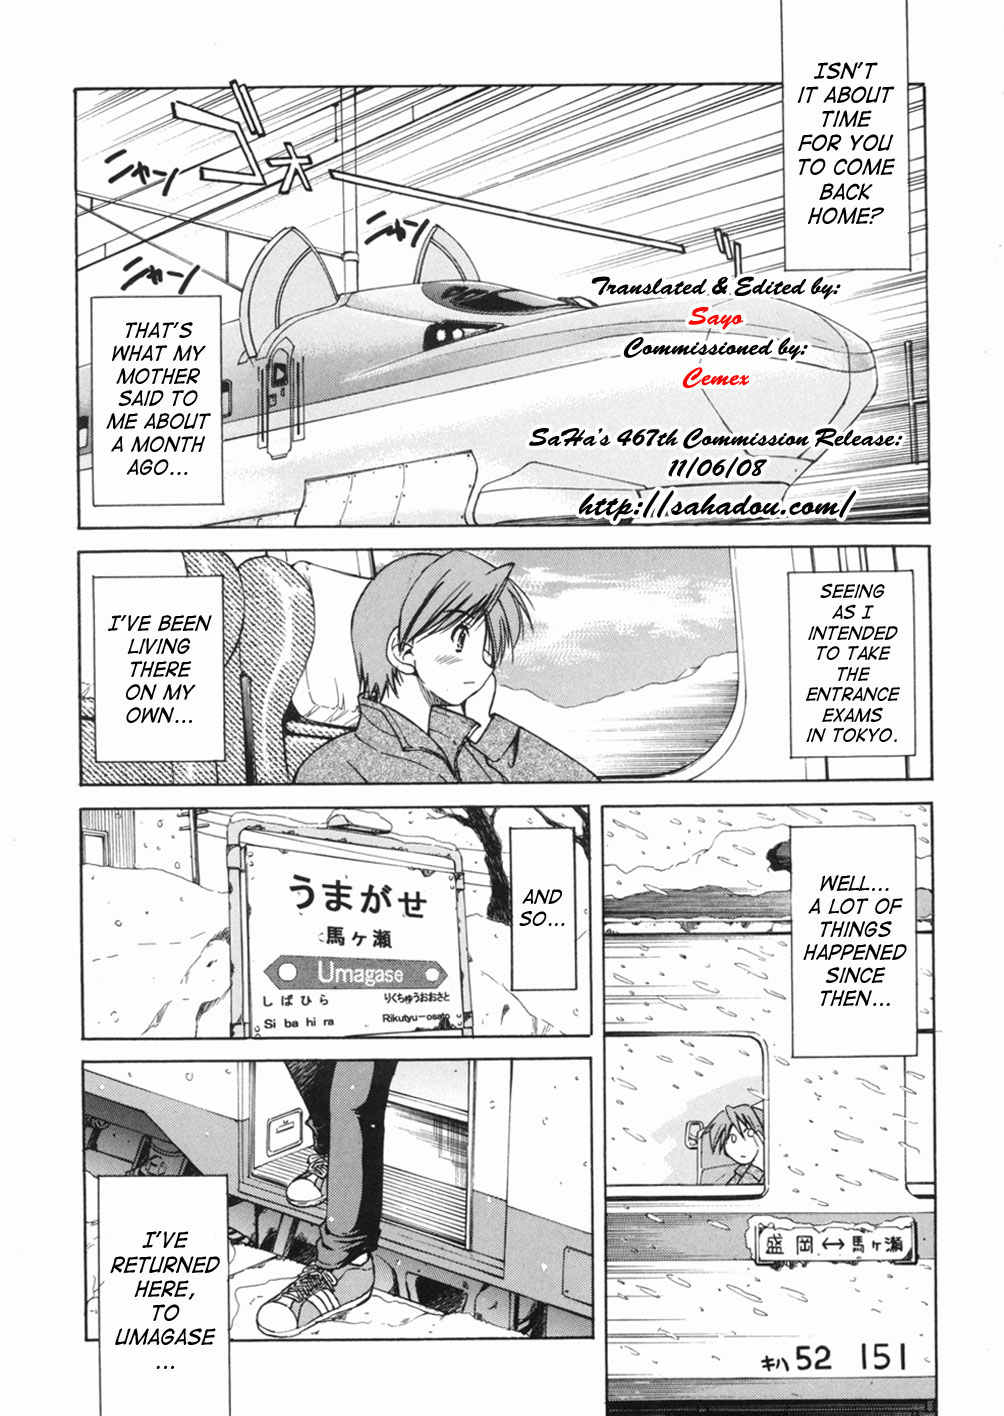 [Inoue Yoshihisa] Sunao Ch. 1-2, 5, 8 [English] page 6 full